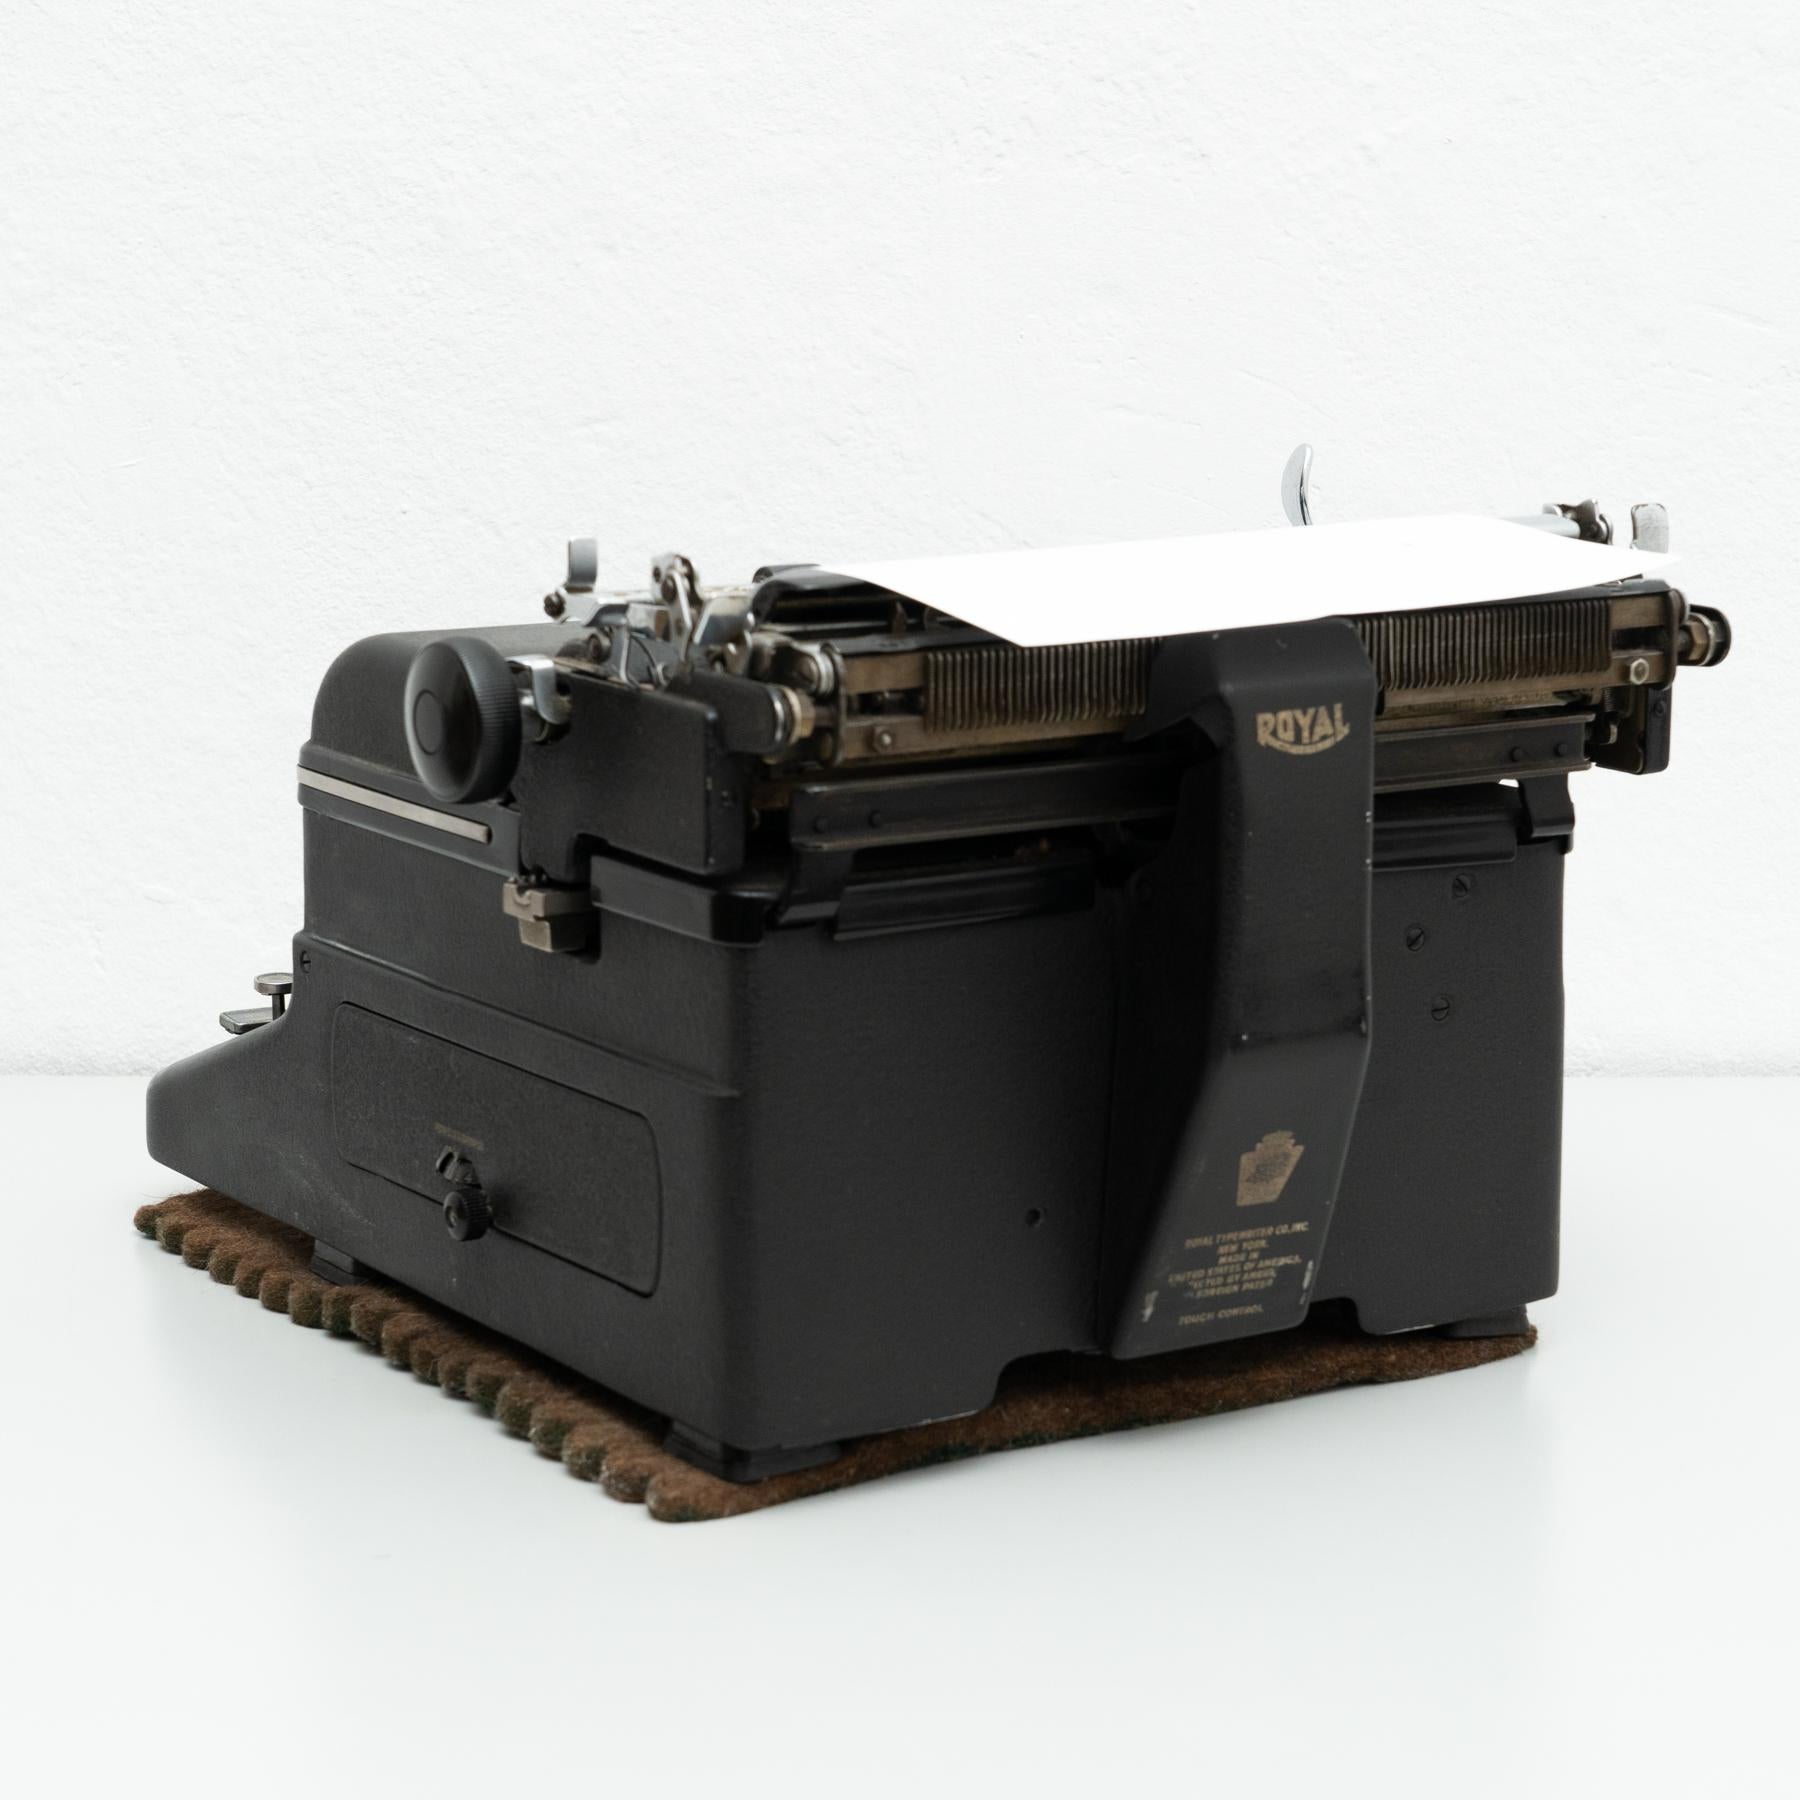 Early 20th Century Antique Royal Typewriter Machine, circa 1920